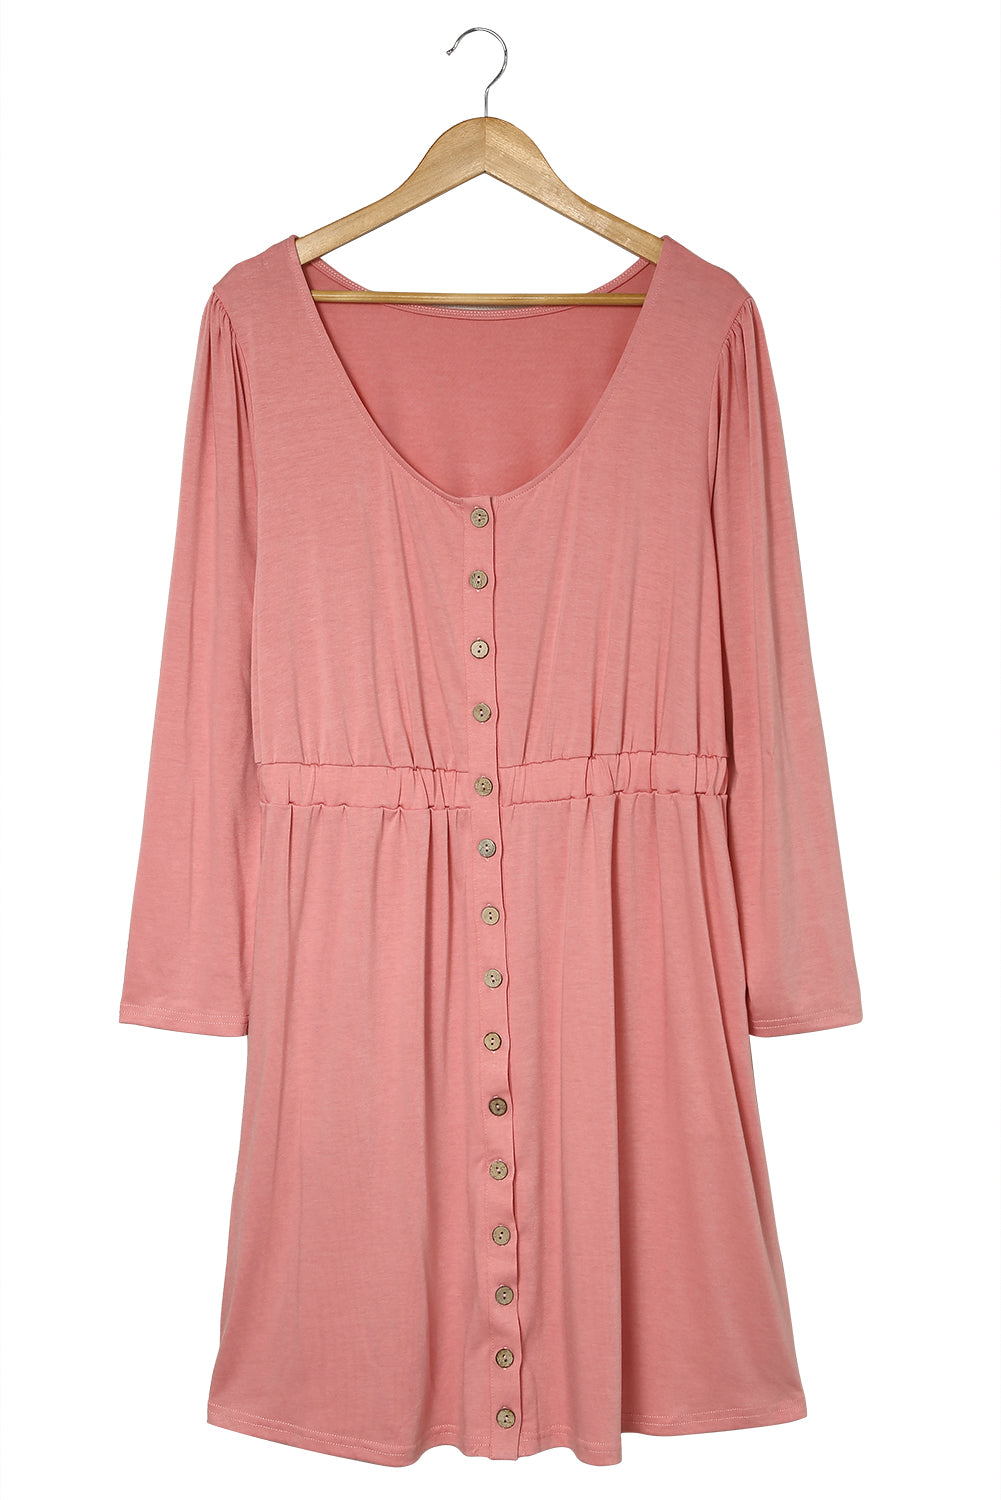 Rosafarbenes, einfarbiges, langärmliges Kleid in Übergröße mit Knopfleiste vorne